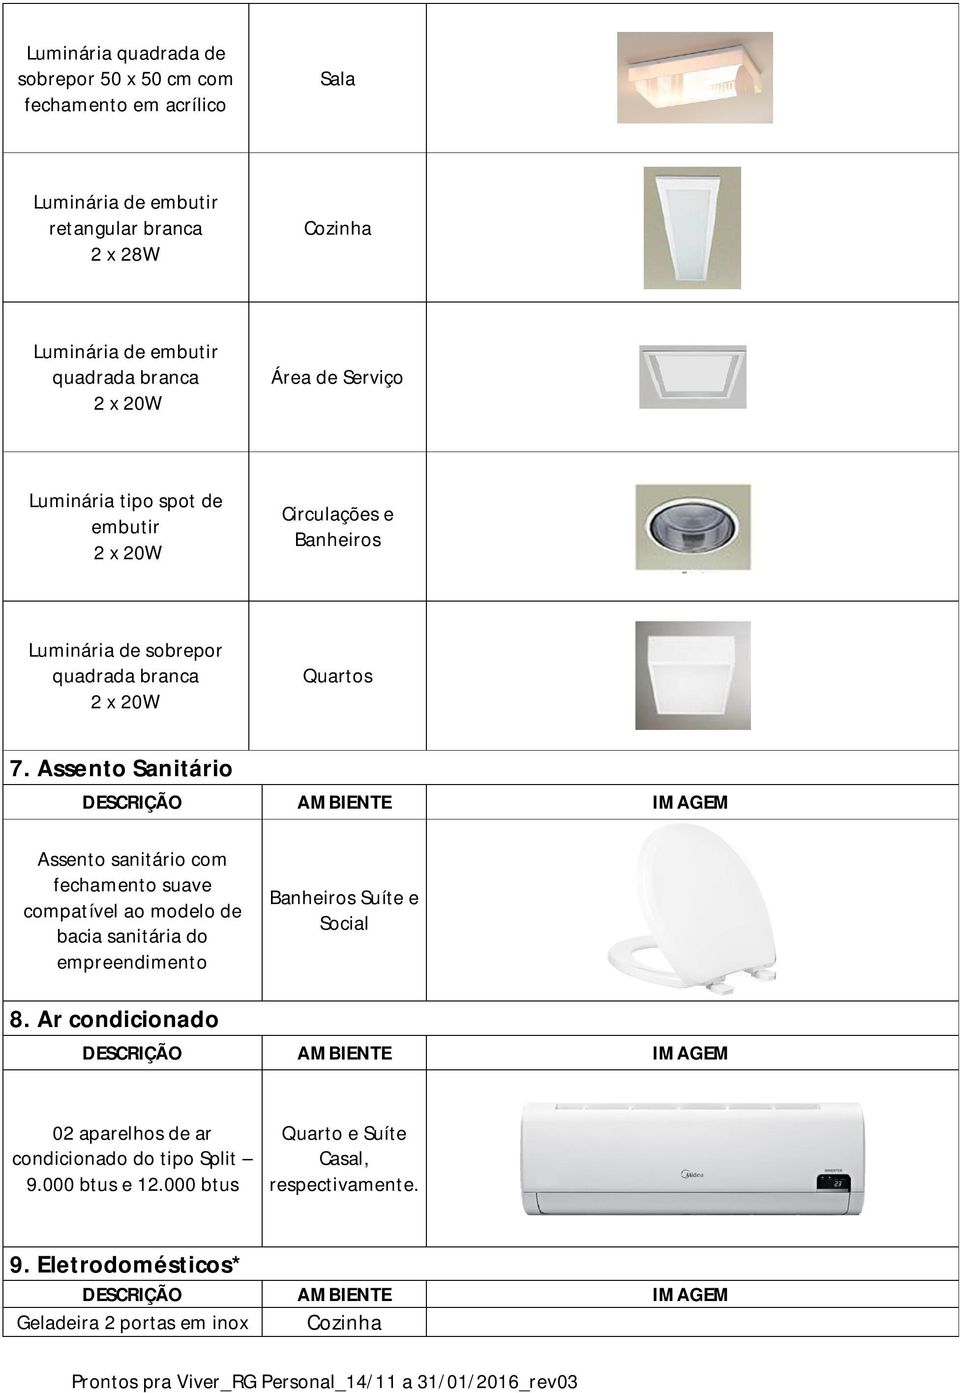 Assento Sanitário Assento sanitário com fechamento suave compatível ao modelo de bacia sanitária do empreendimento Banheiros Suíte e Social 8.